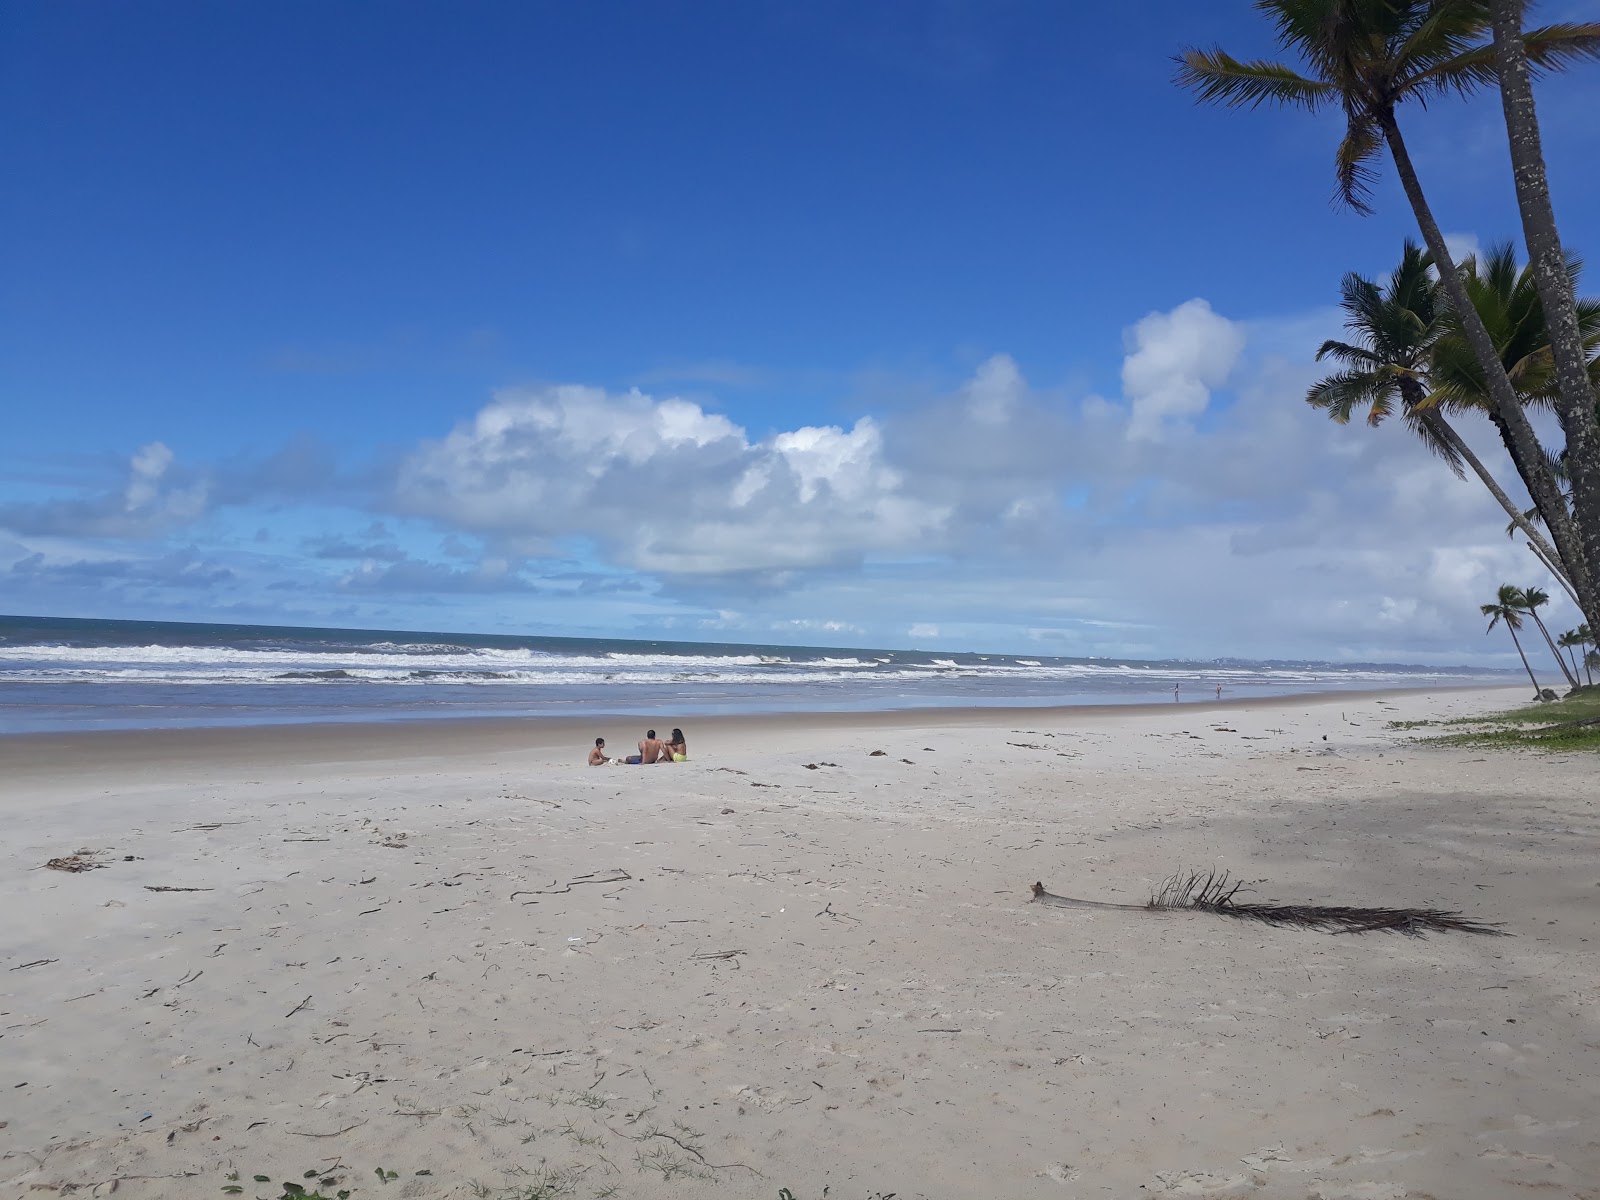 Foto af Praia da Realeza Bahia - populært sted blandt afslapningskendere